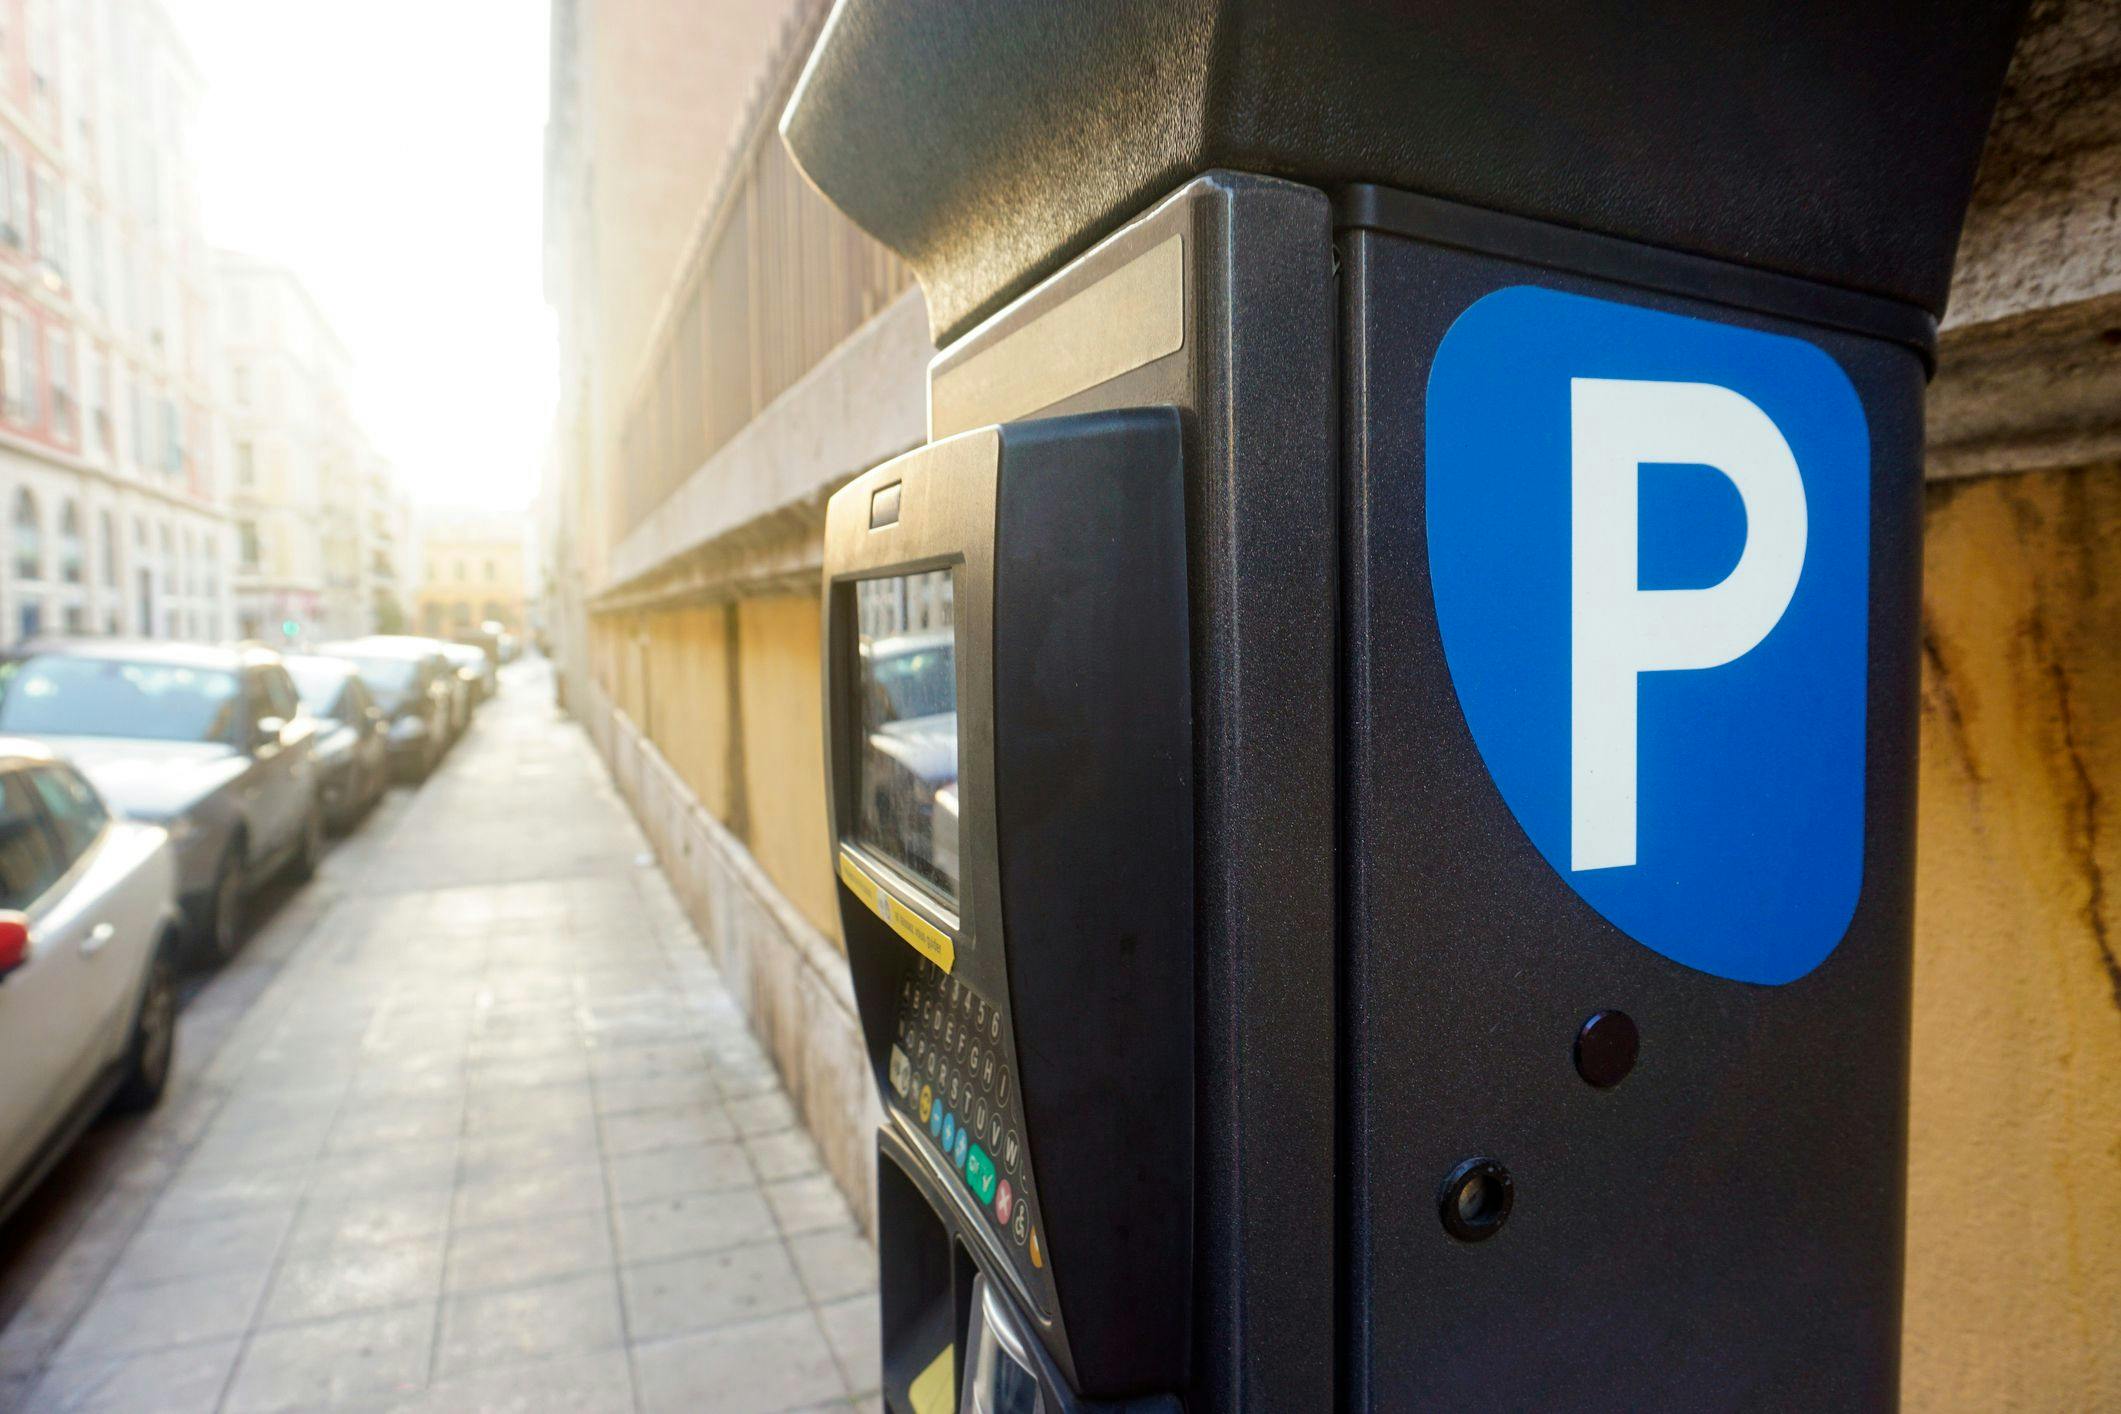 Support Ticket Stationnement Autocollant Horodateur Parking Pare-Brise  Voiture